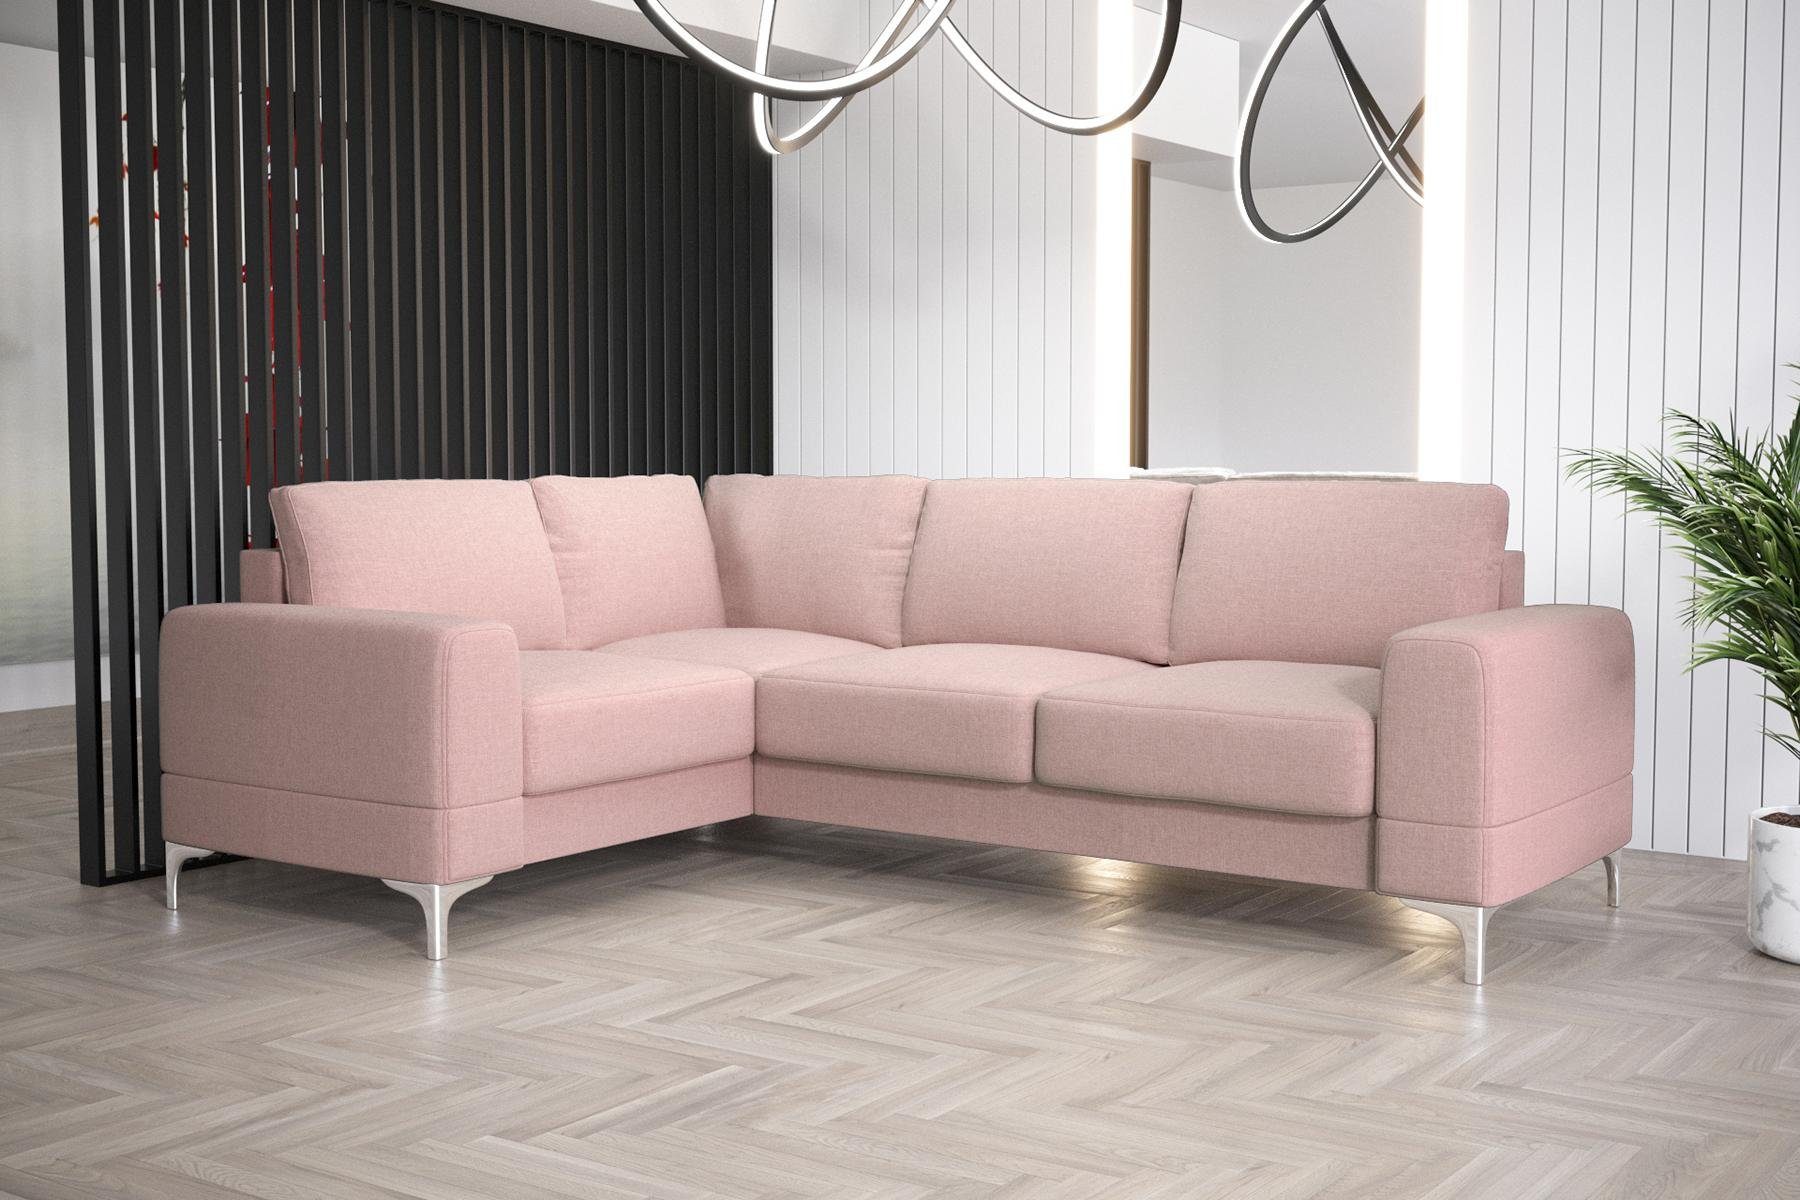 JVmoebel Ecksofa Wohnzimmer Sofa L-Form Möbel Modern Luxus Ecksofa Couch, Made in Europe Rosa